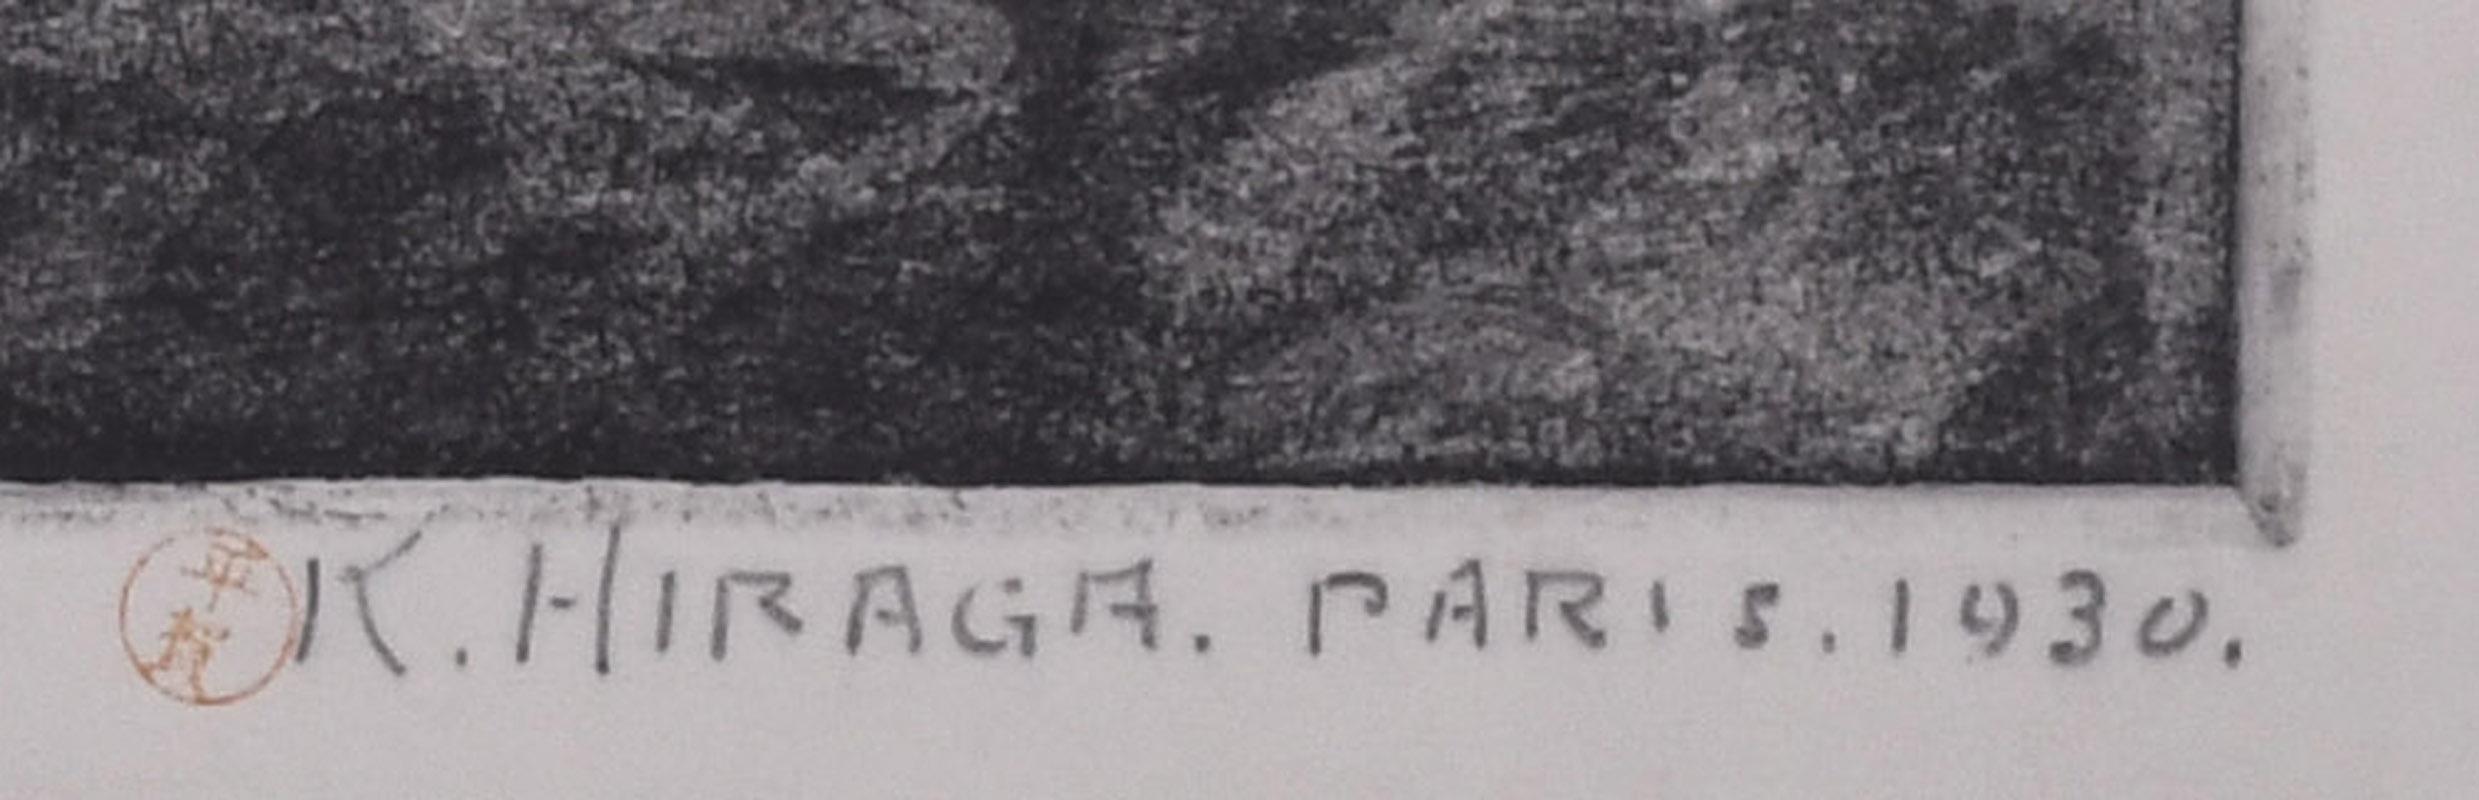 unbetitelt (Fischerboote, Normandie)
Weichgrund-Radierung, 1930
Vom Künstler mit Bleistift signiert und datiert
Siegel des Künstlers
Mit Anmerkungen 